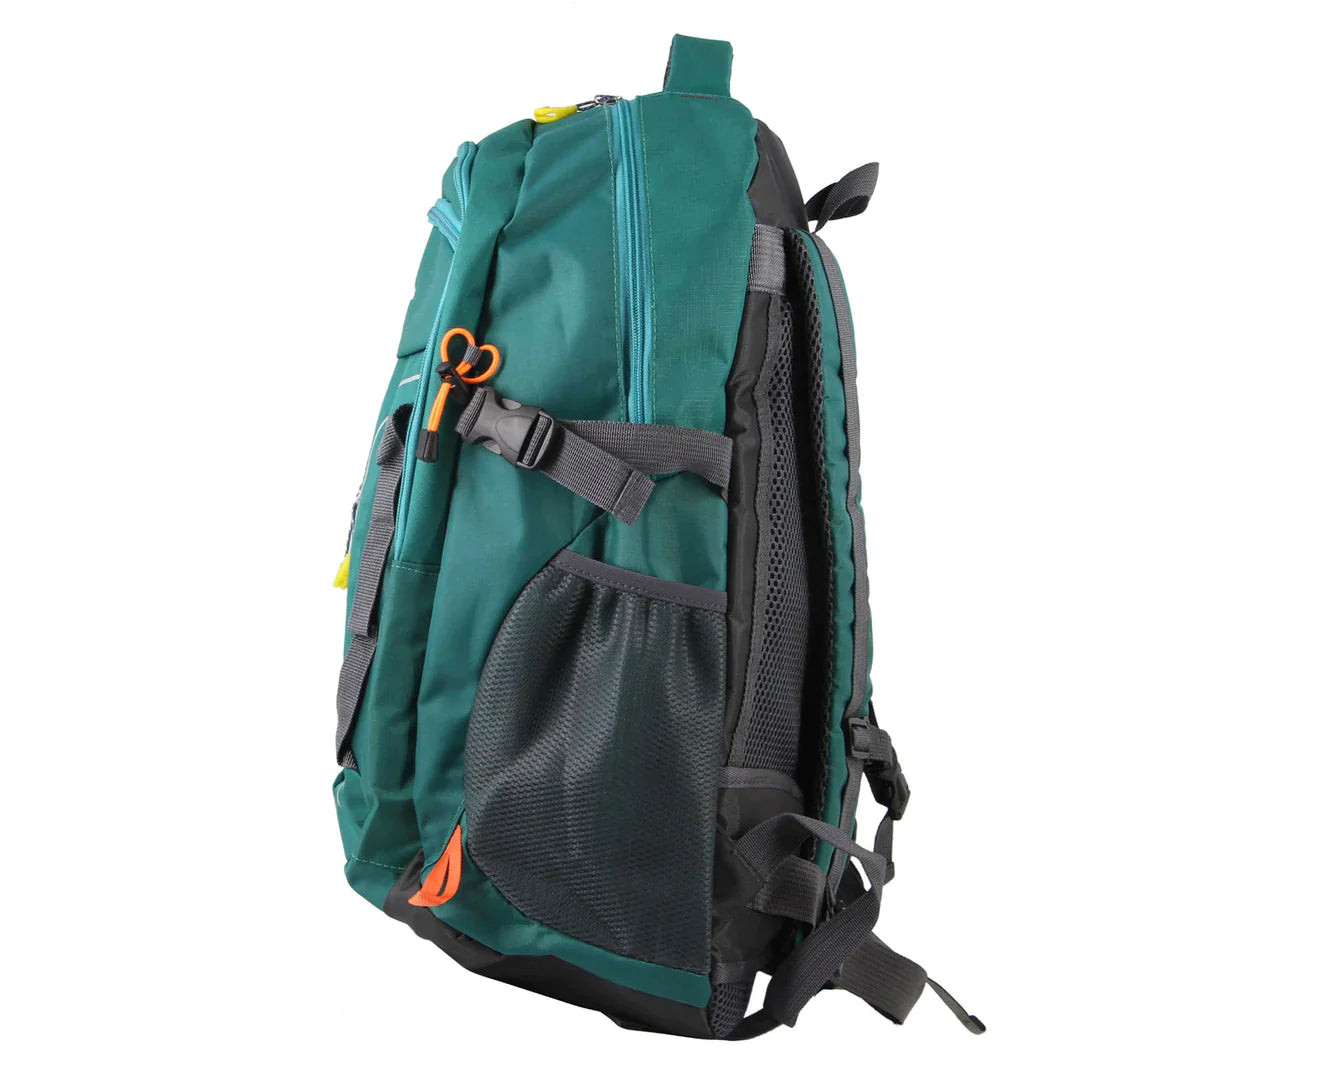 Pierre Cardin Adventure Backpack - Green - 50L